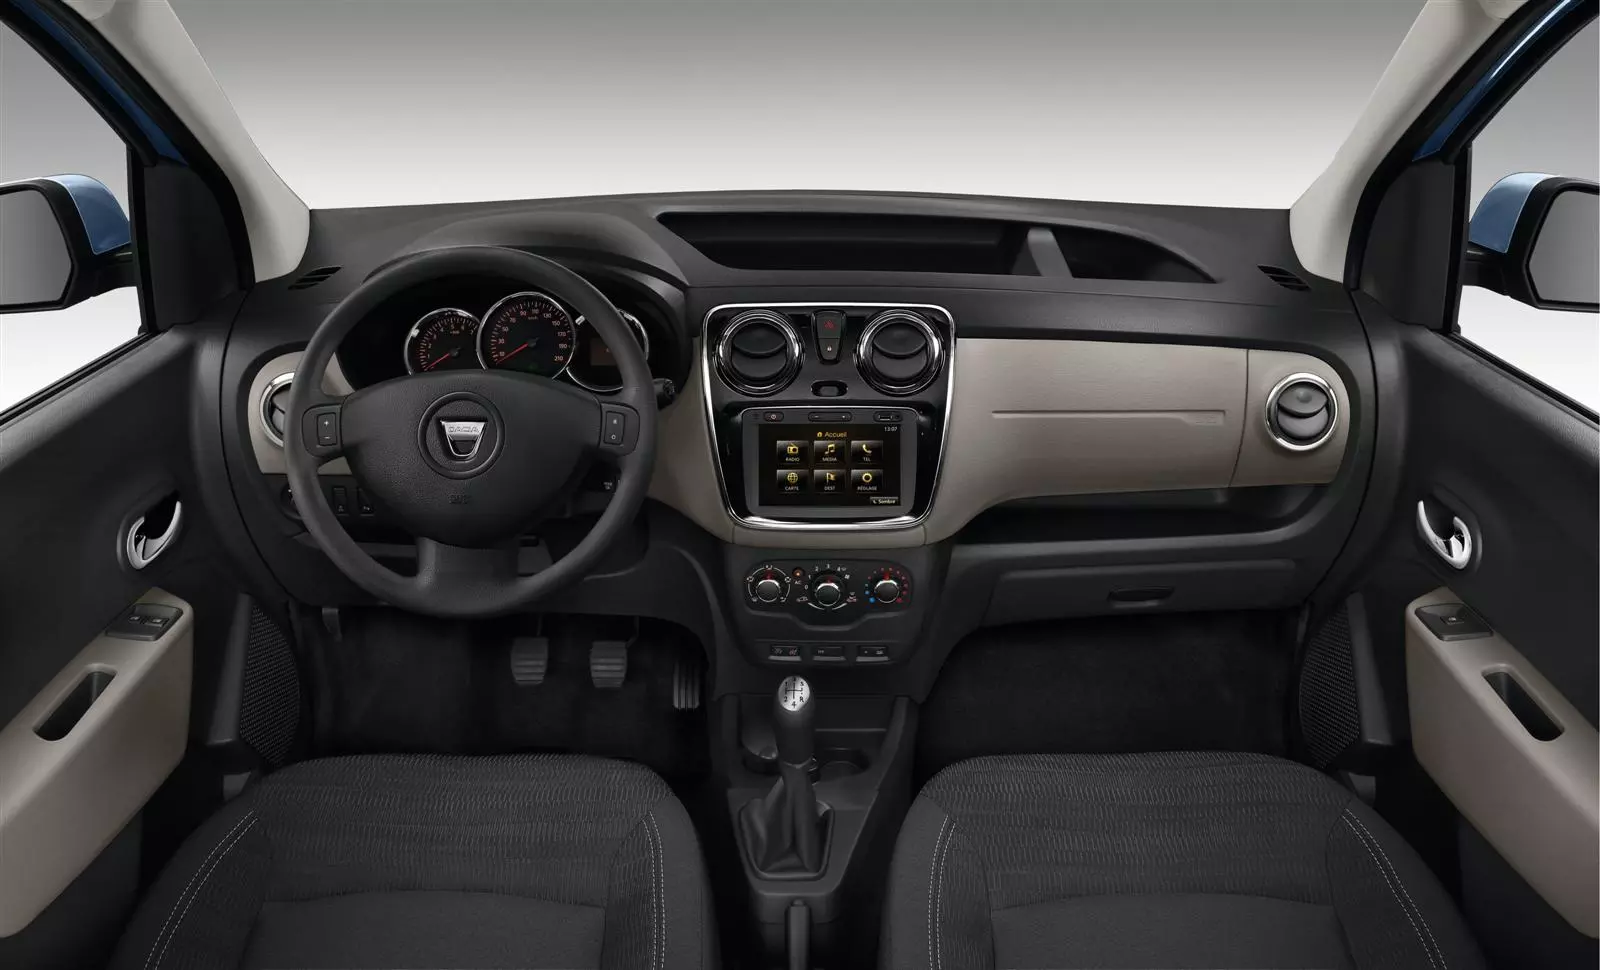 Dacia Dokker Embleme LPG - affordable elegance